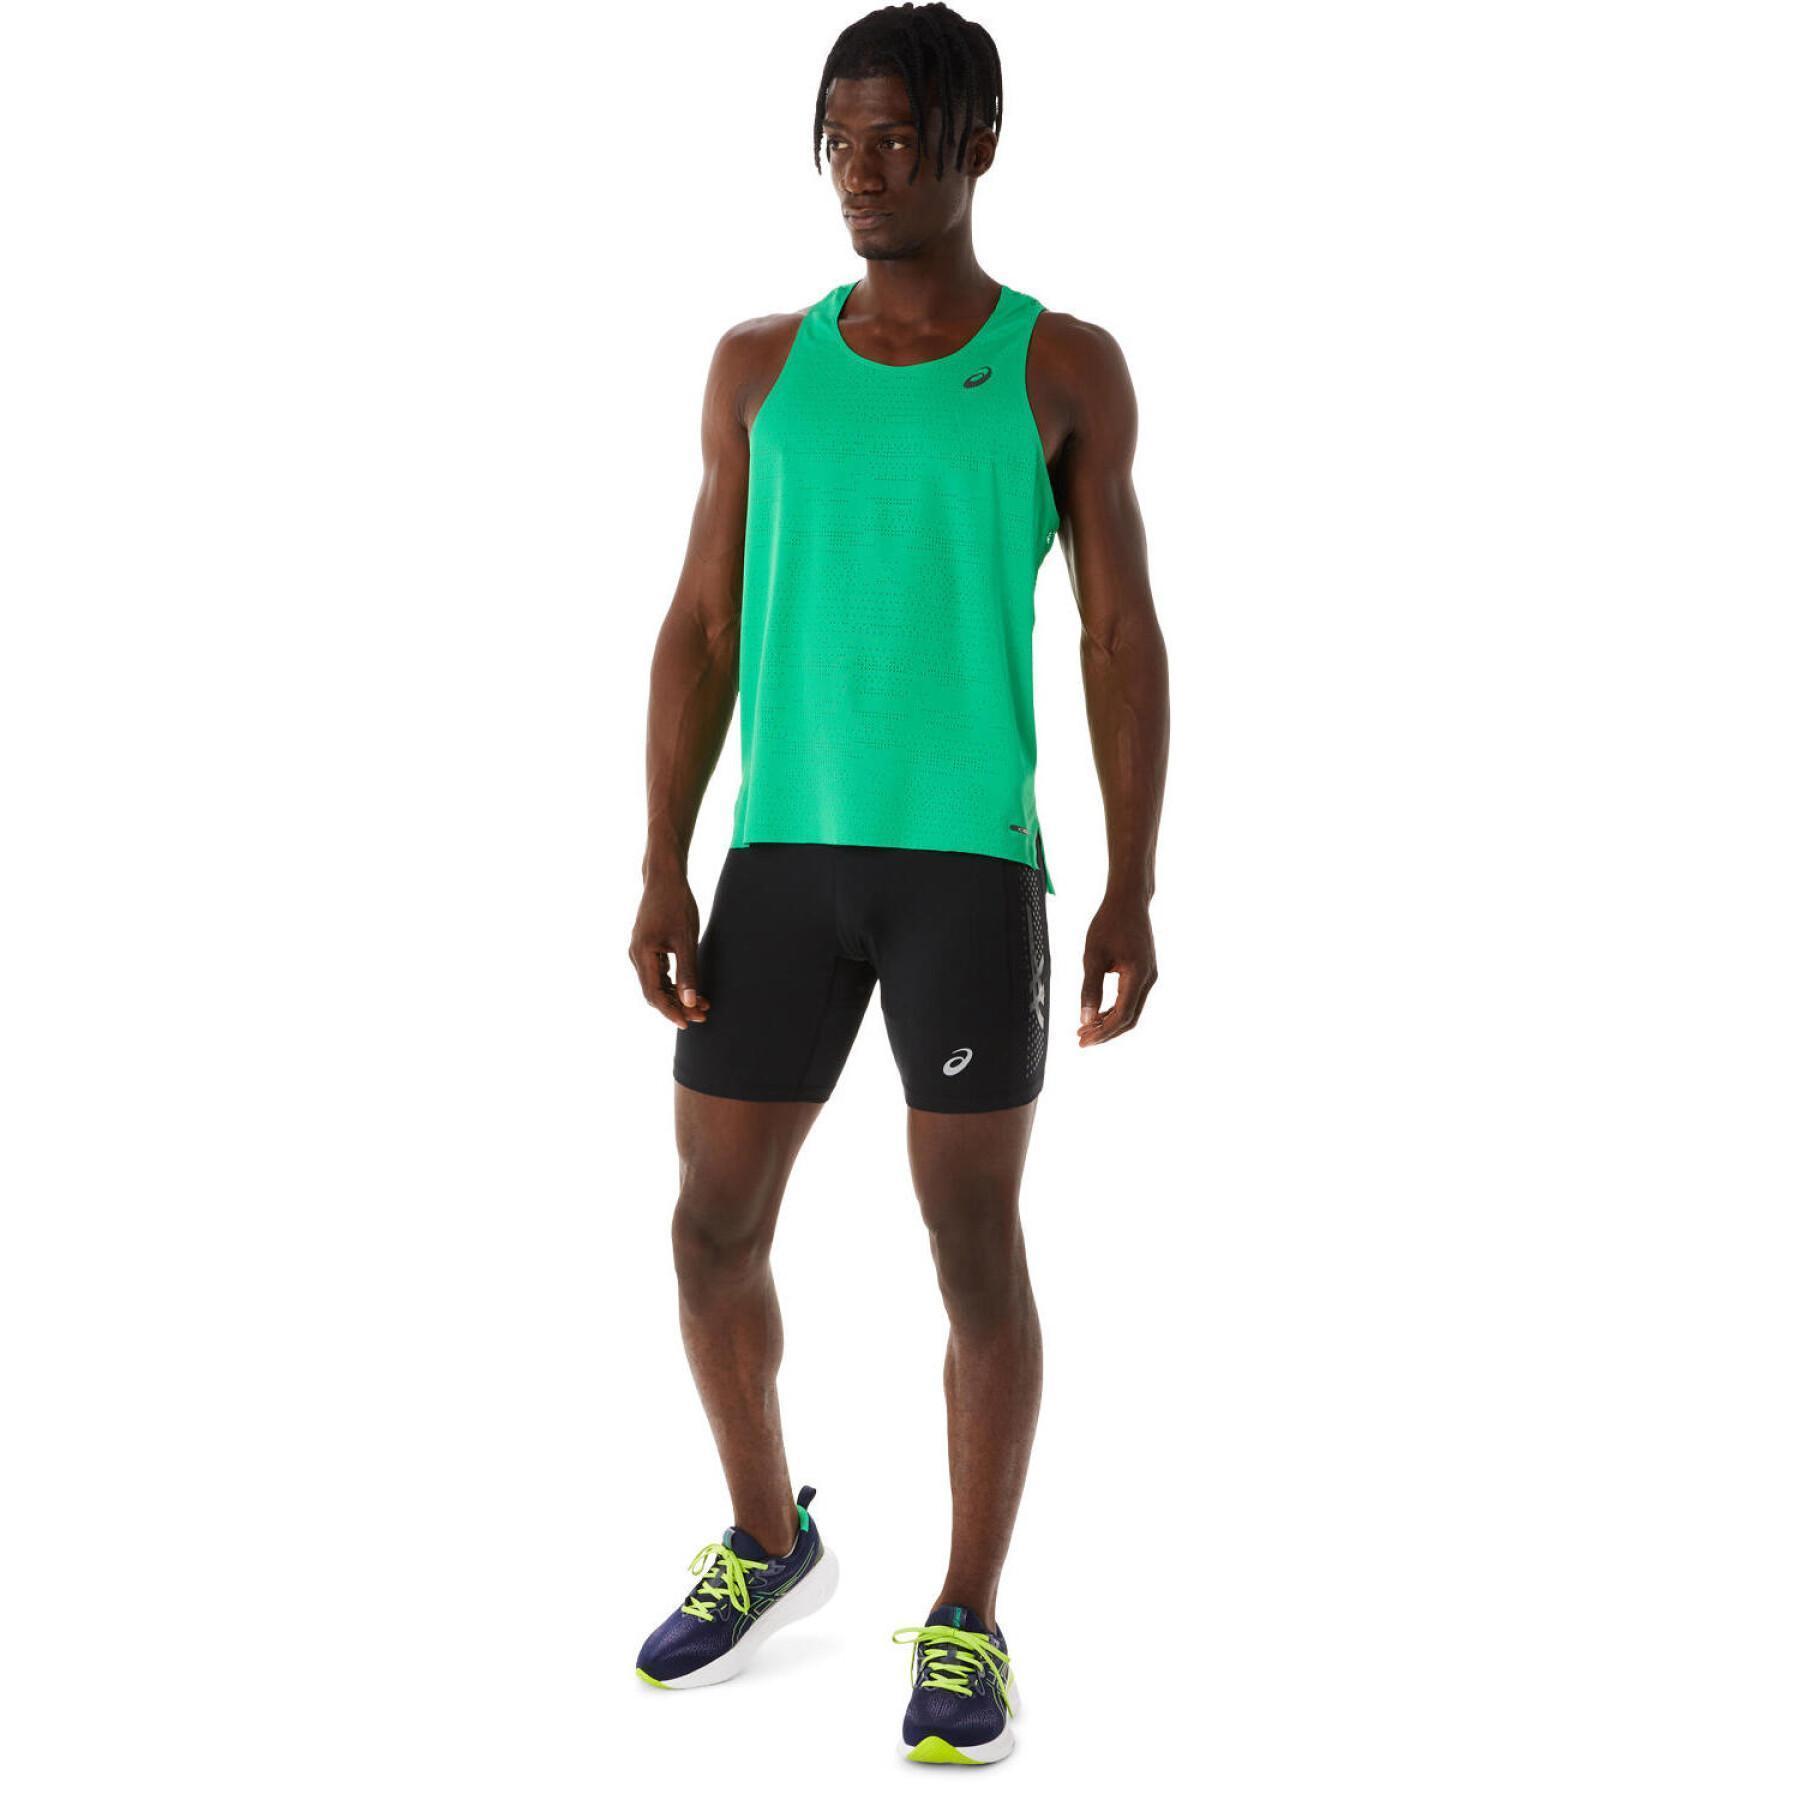 Short Sprinter - Asics - Men's clothing - Running